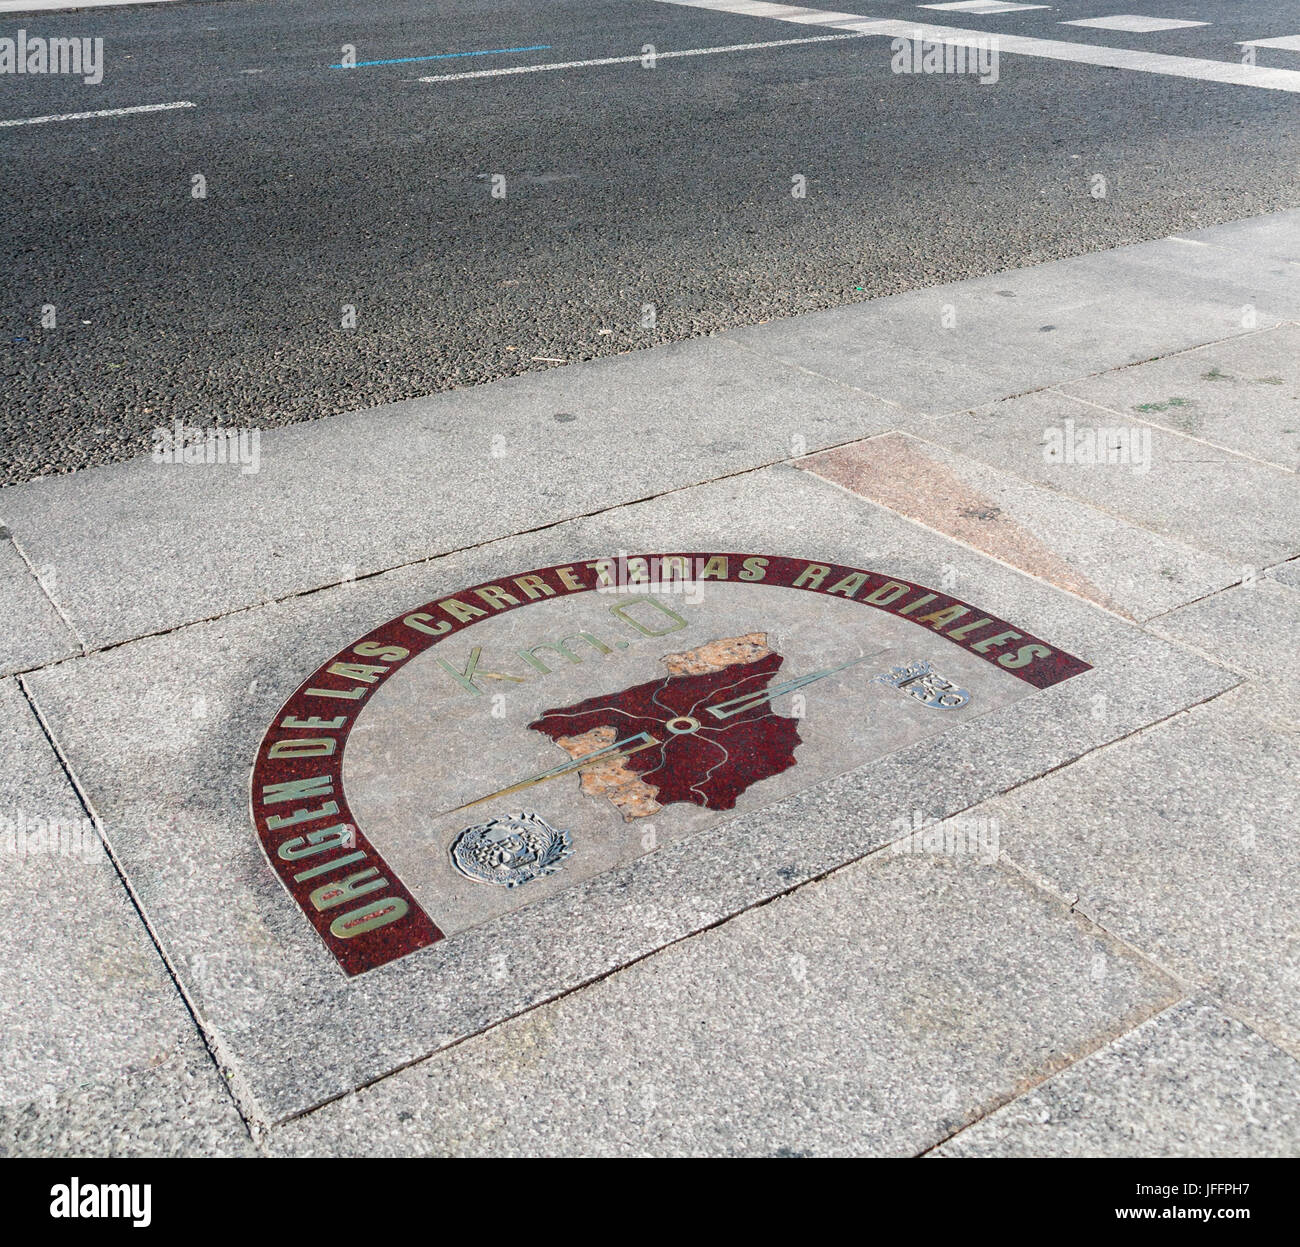 The kilometro cero (kilometre zero) on the pavement in Puerta del Sol square, Madrid Stock Photo